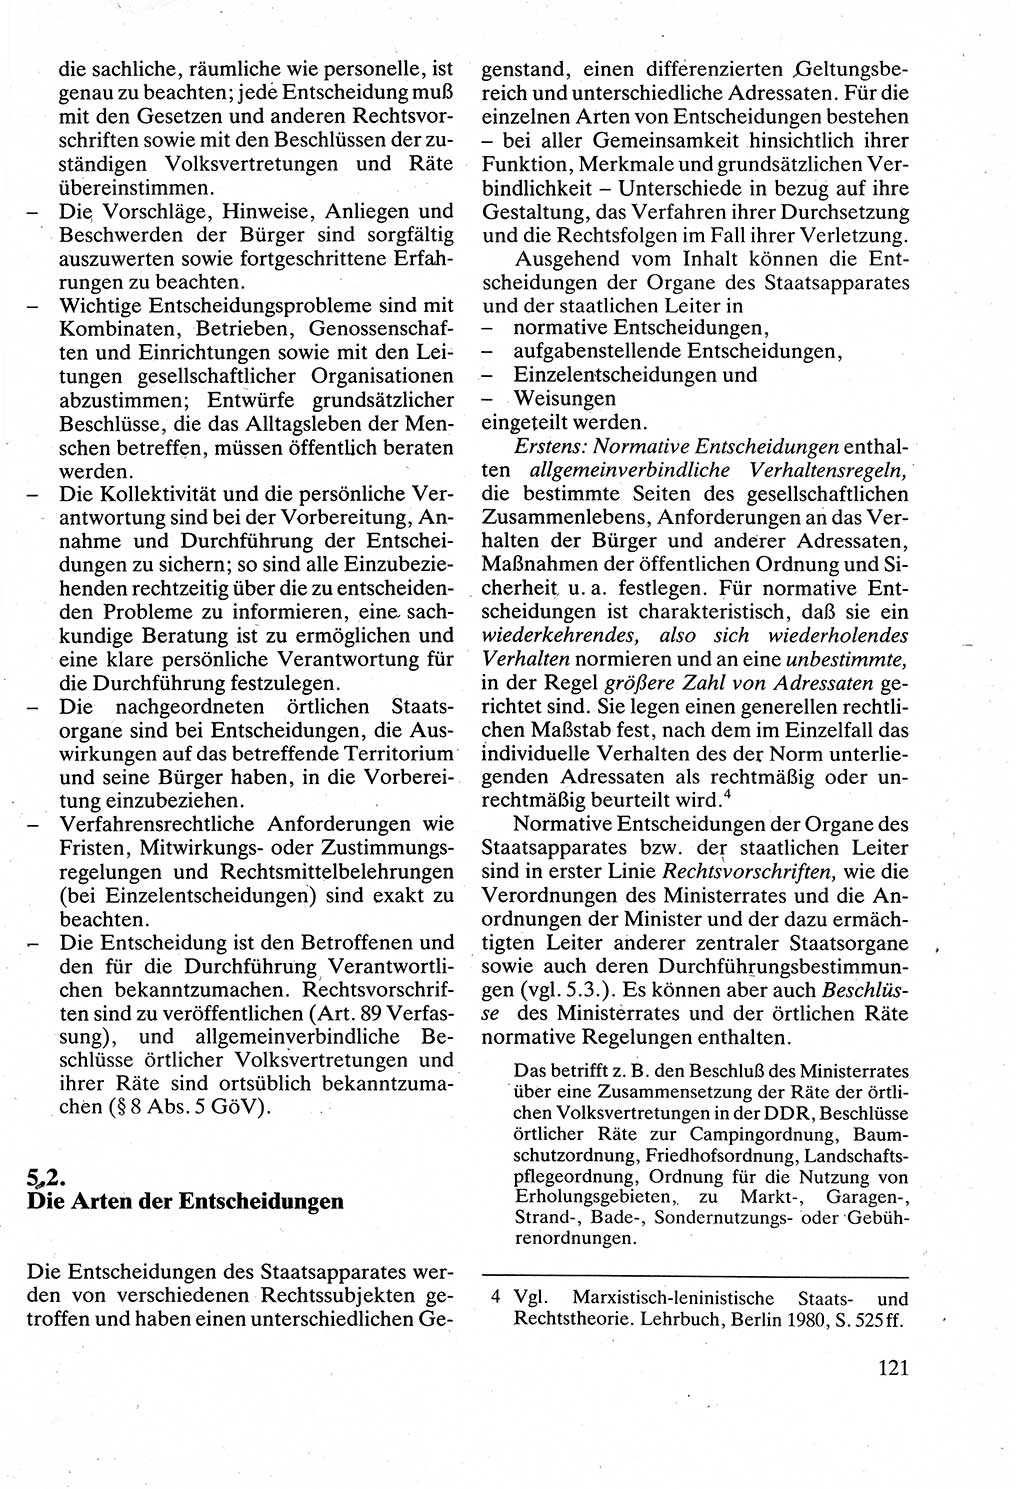 Verwaltungsrecht [Deutsche Demokratische Republik (DDR)], Lehrbuch 1988, Seite 121 (Verw.-R. DDR Lb. 1988, S. 121)